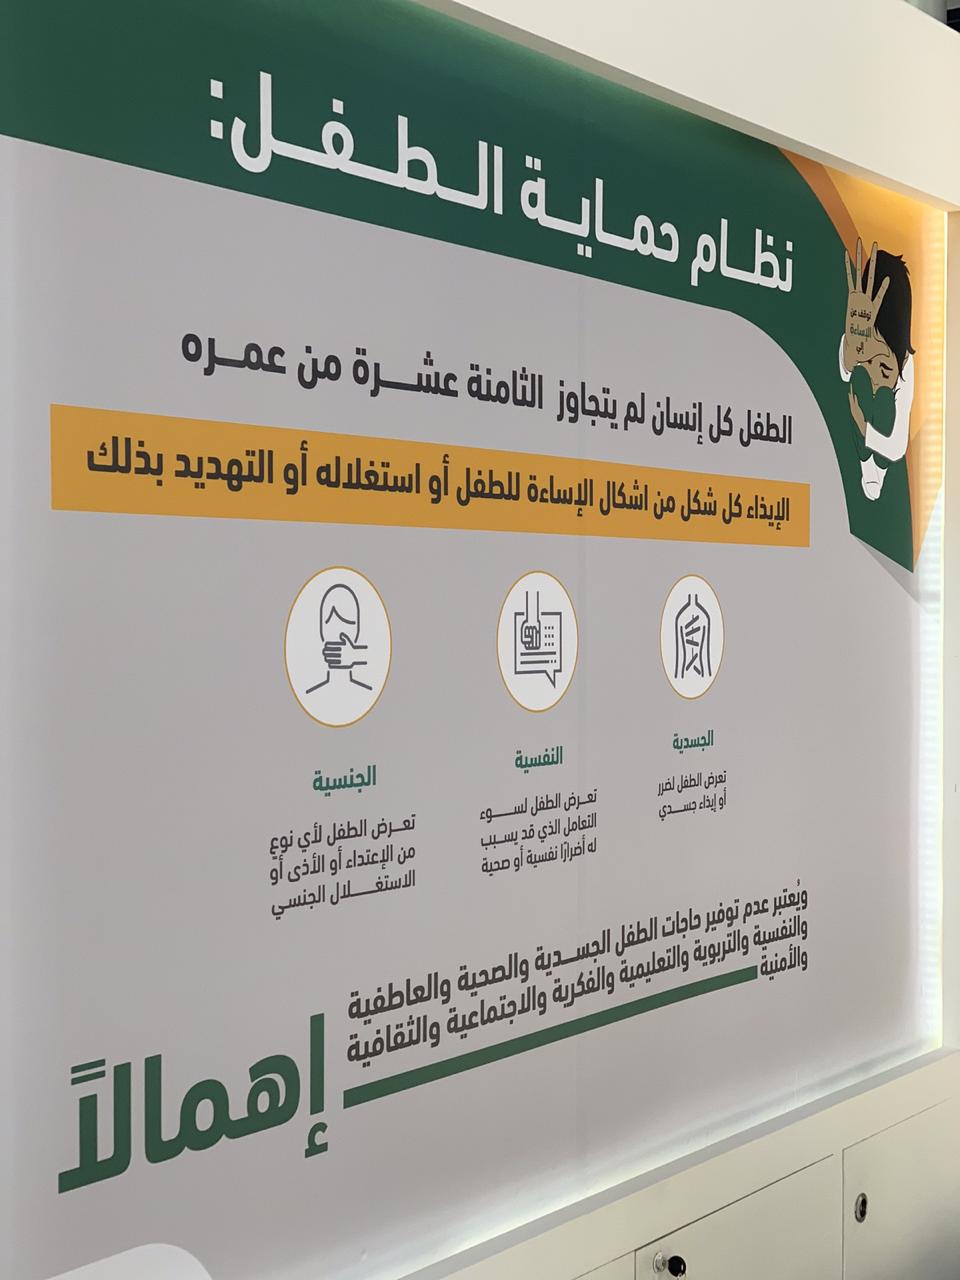 وزارة العدل تطلق معرض الثقافة العدلية بجامعة الملك سعود